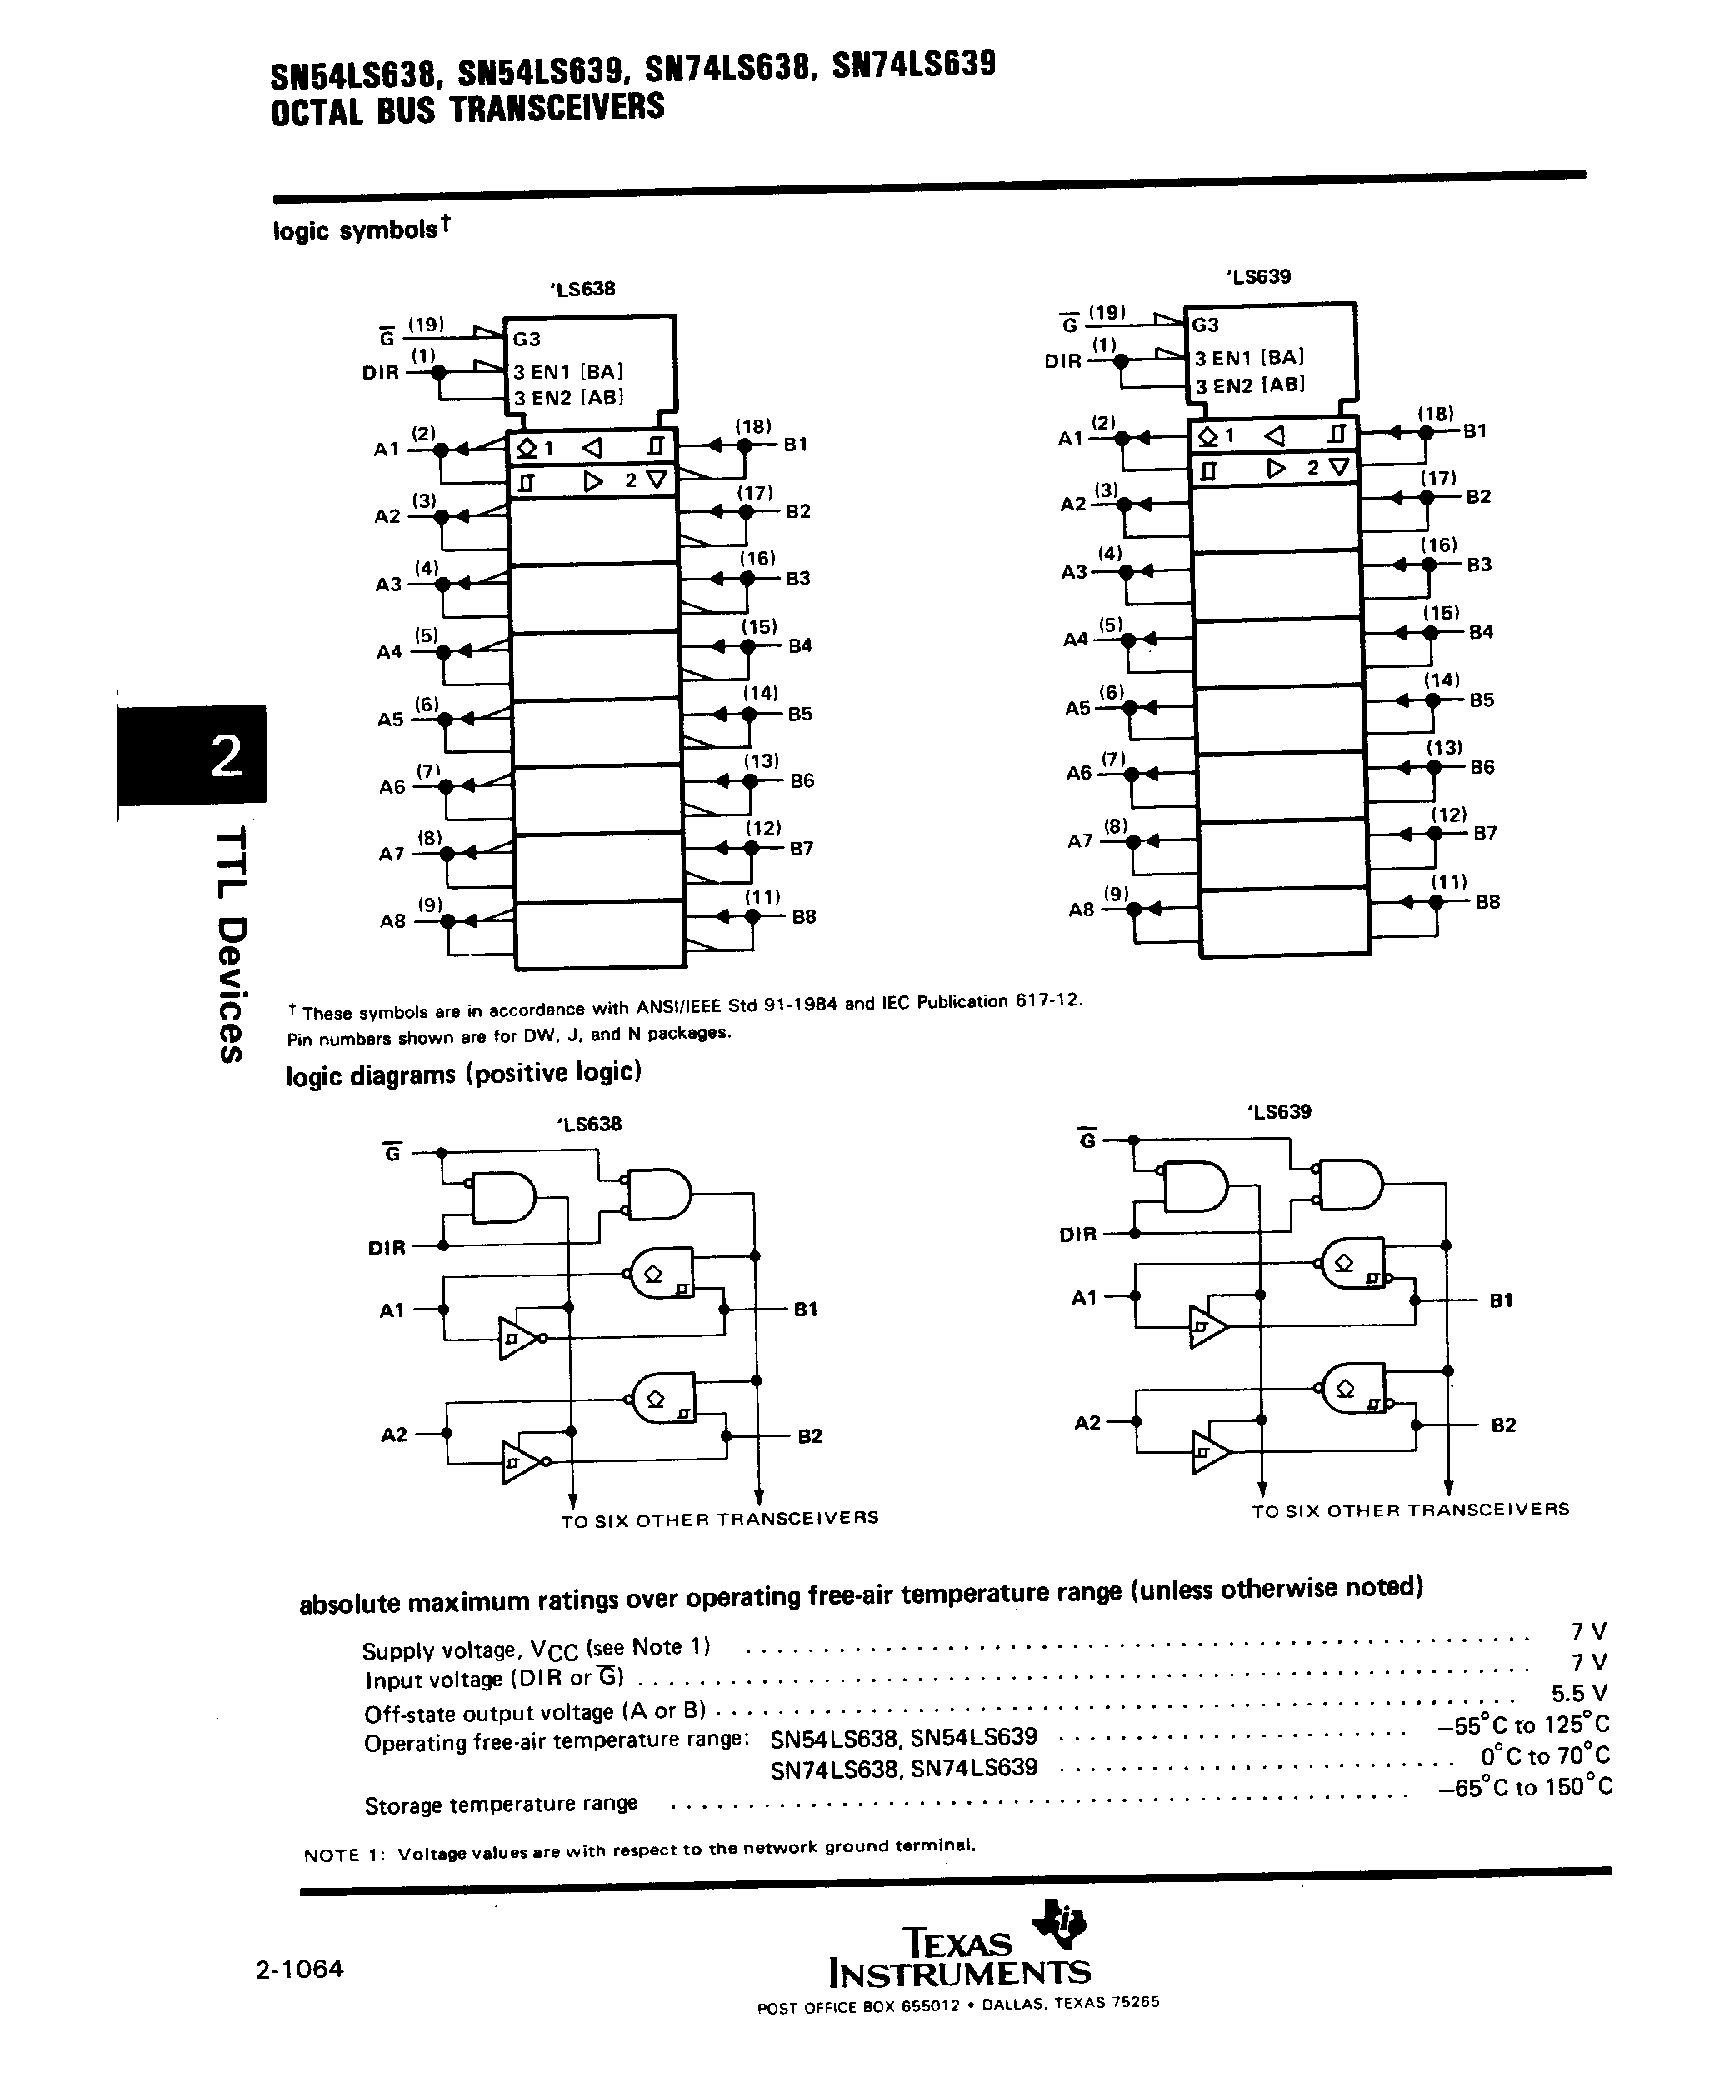 Datasheet SN74LS638 - (SN74LS639) Octal Bus Transceivers page 2